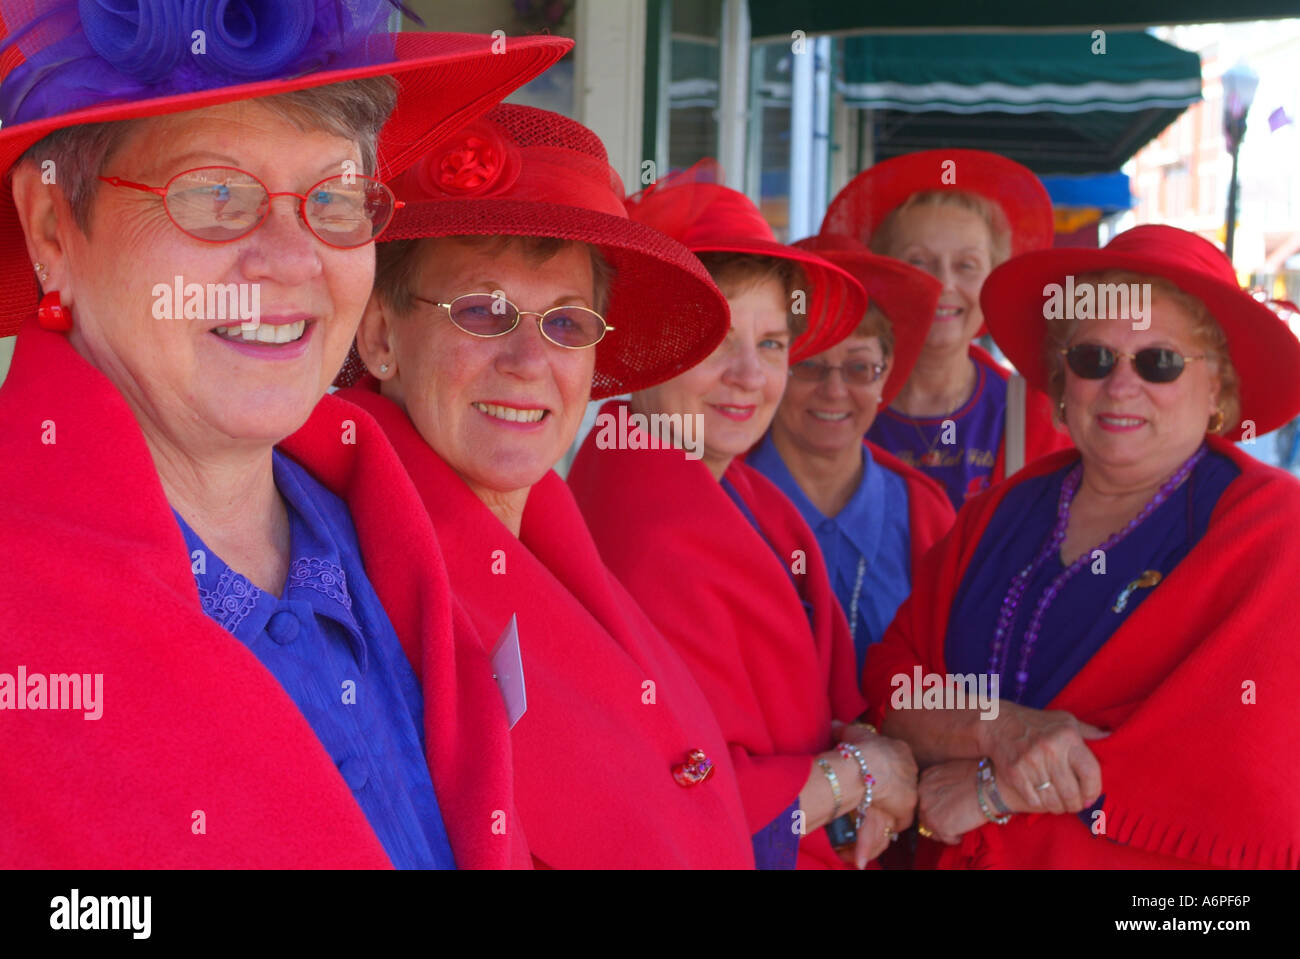 USA i membri del Red Hat società visitare Mackinac Island Foto Stock